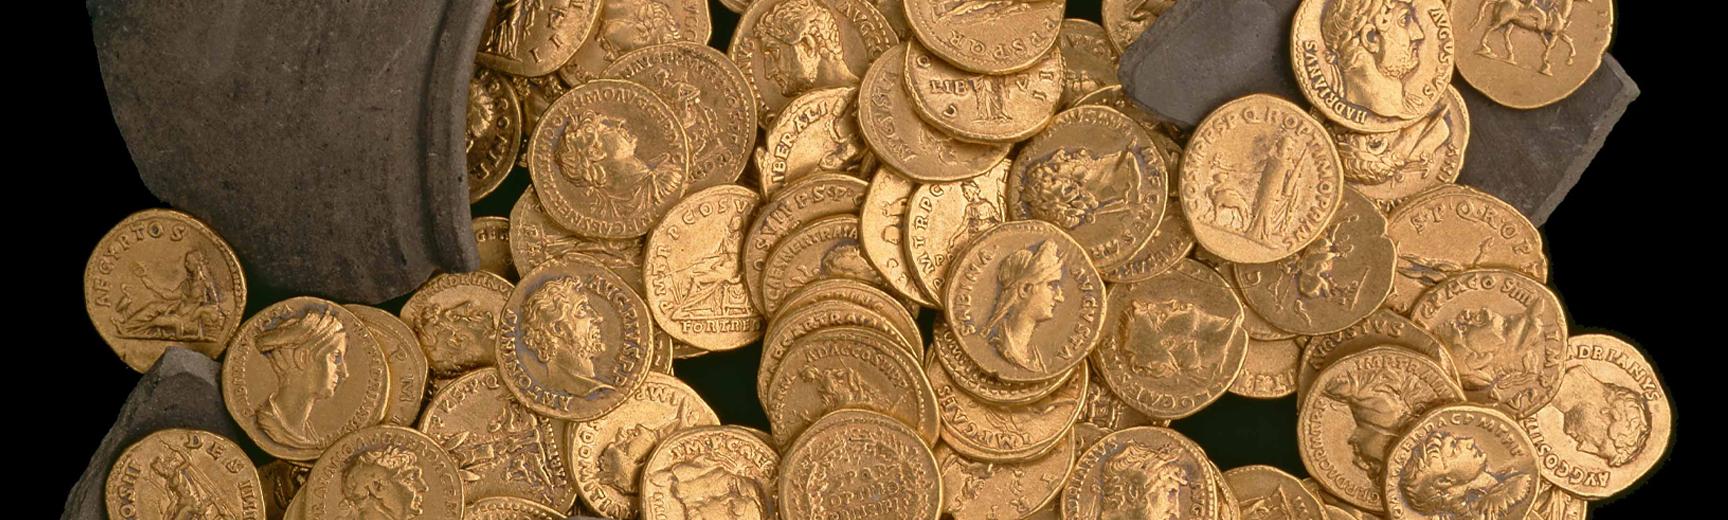 Roman gold research didcot ashmolean